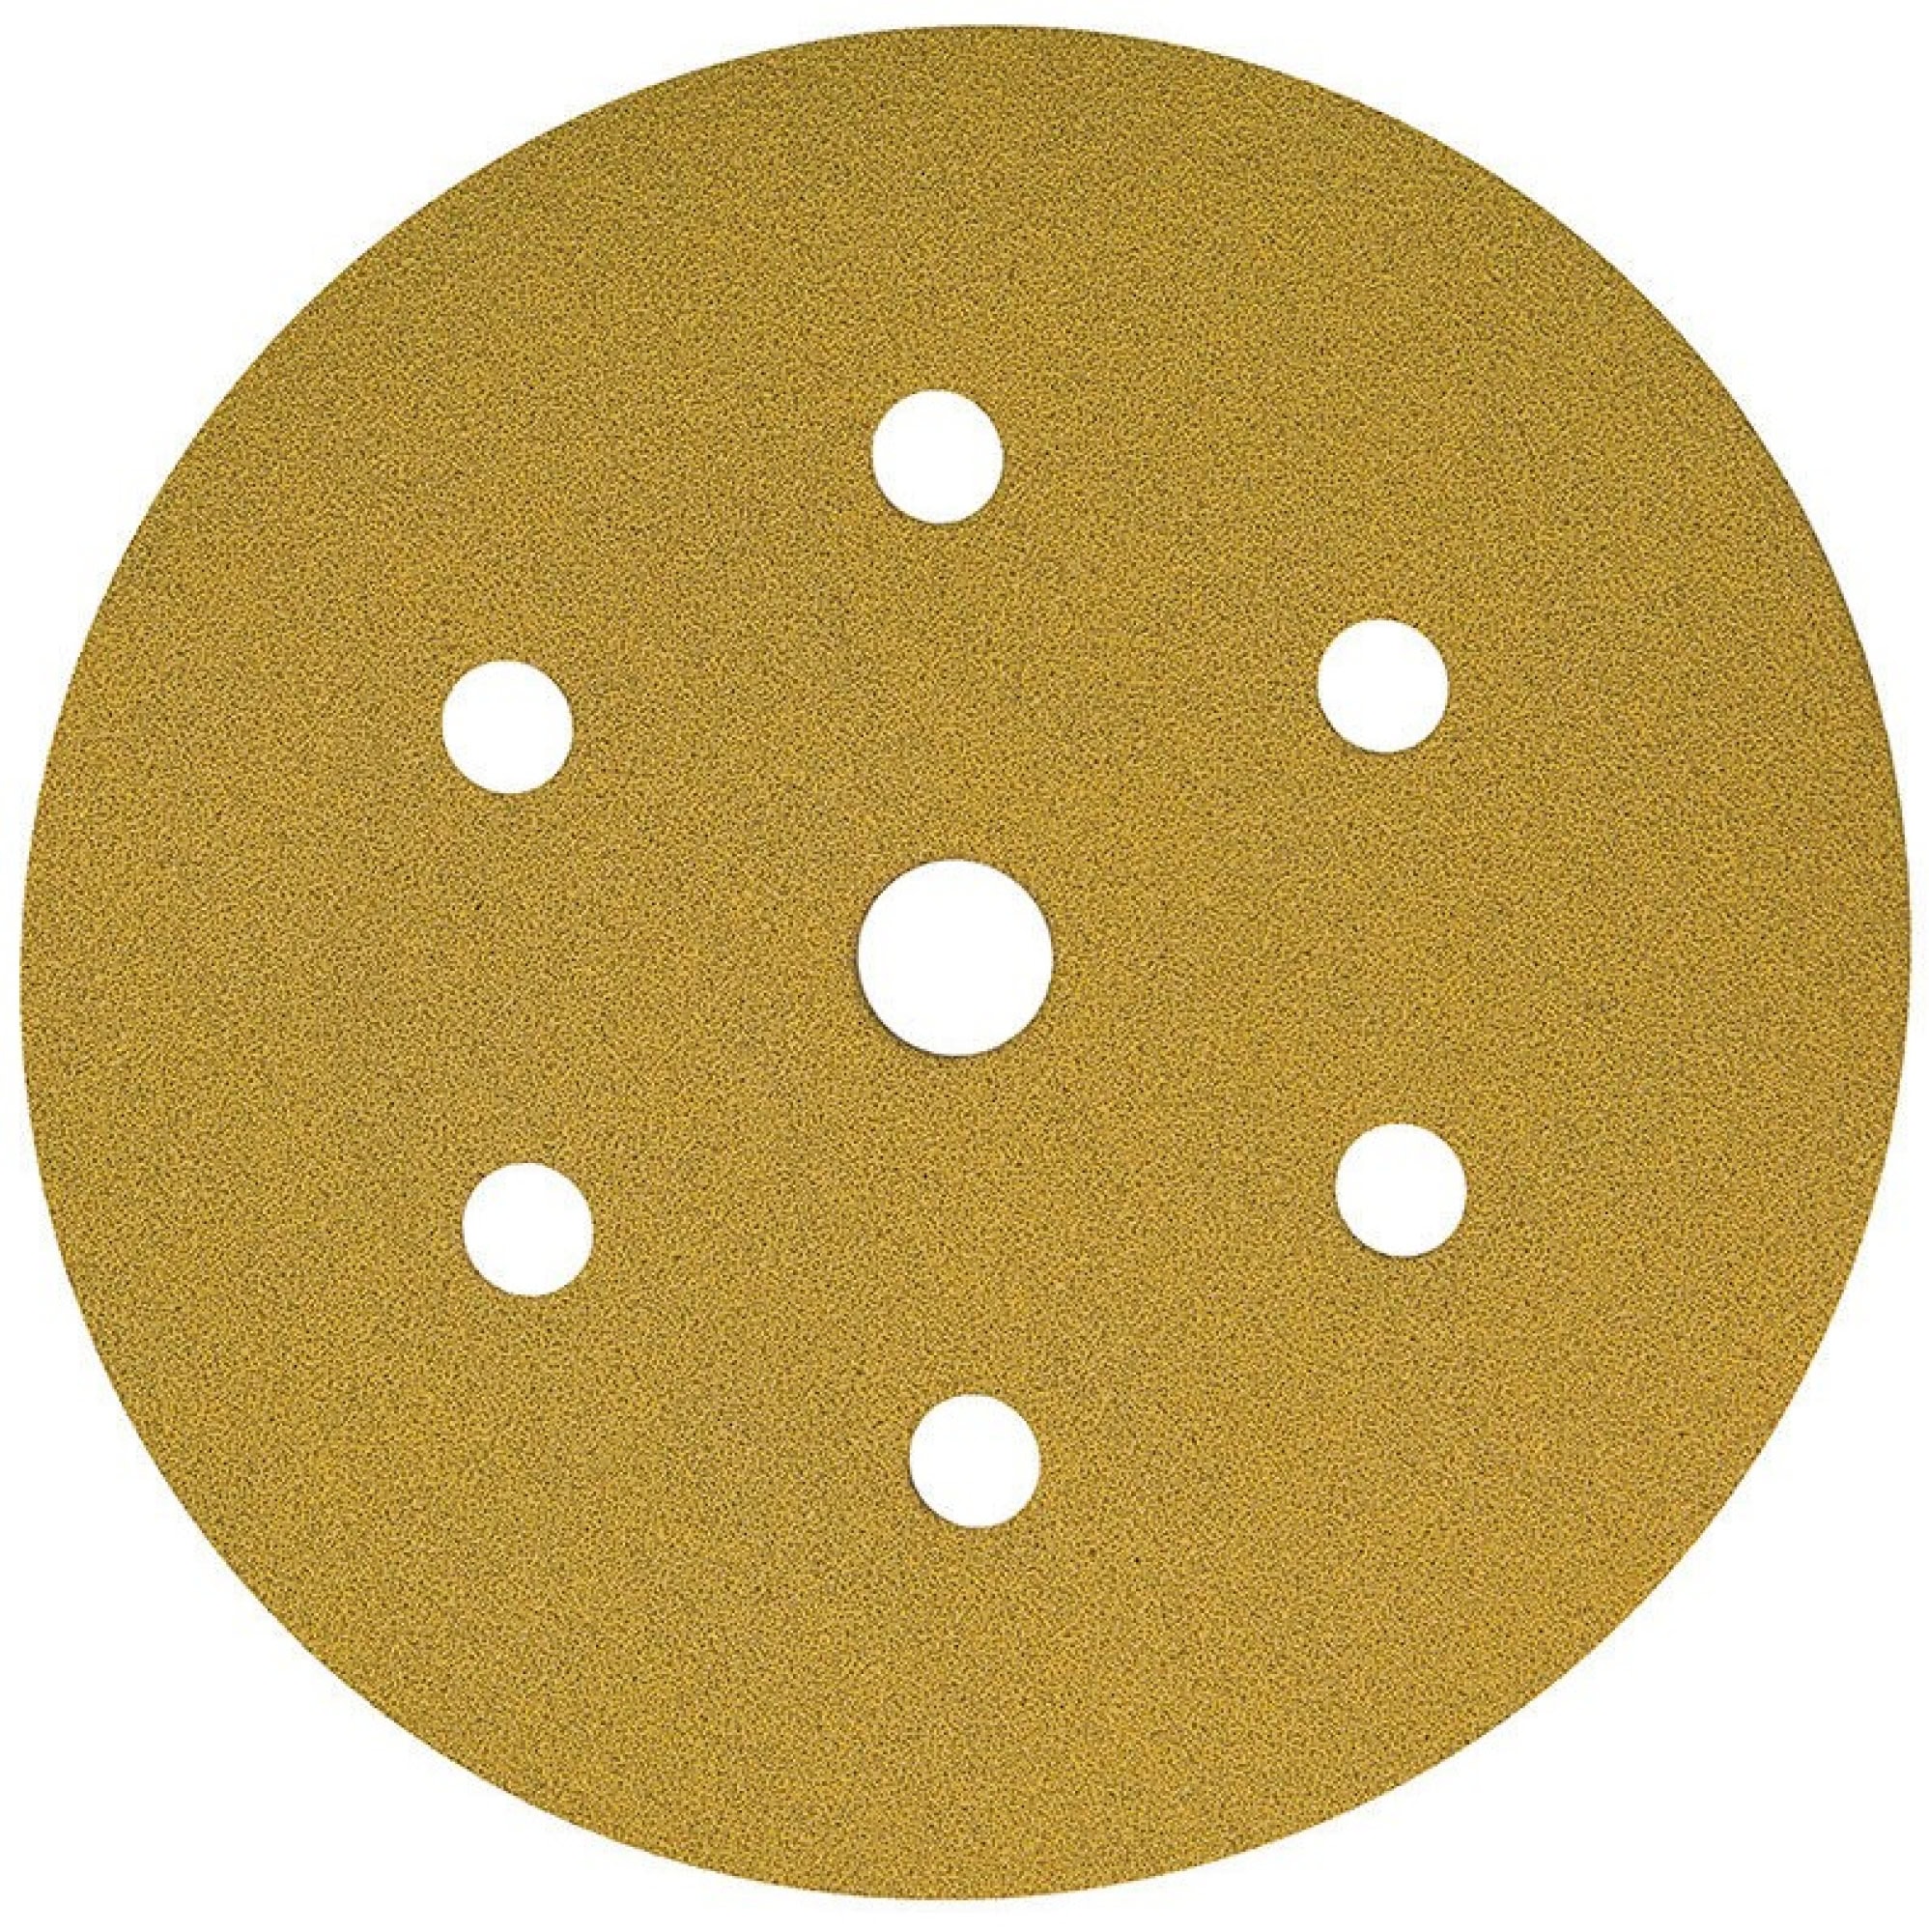 Mirka® Gold 2362809928, Ø 150 mm, P280, 7-fach gelocht, Kletthaftend, Schleifscheibe mit Aluminiumkorn